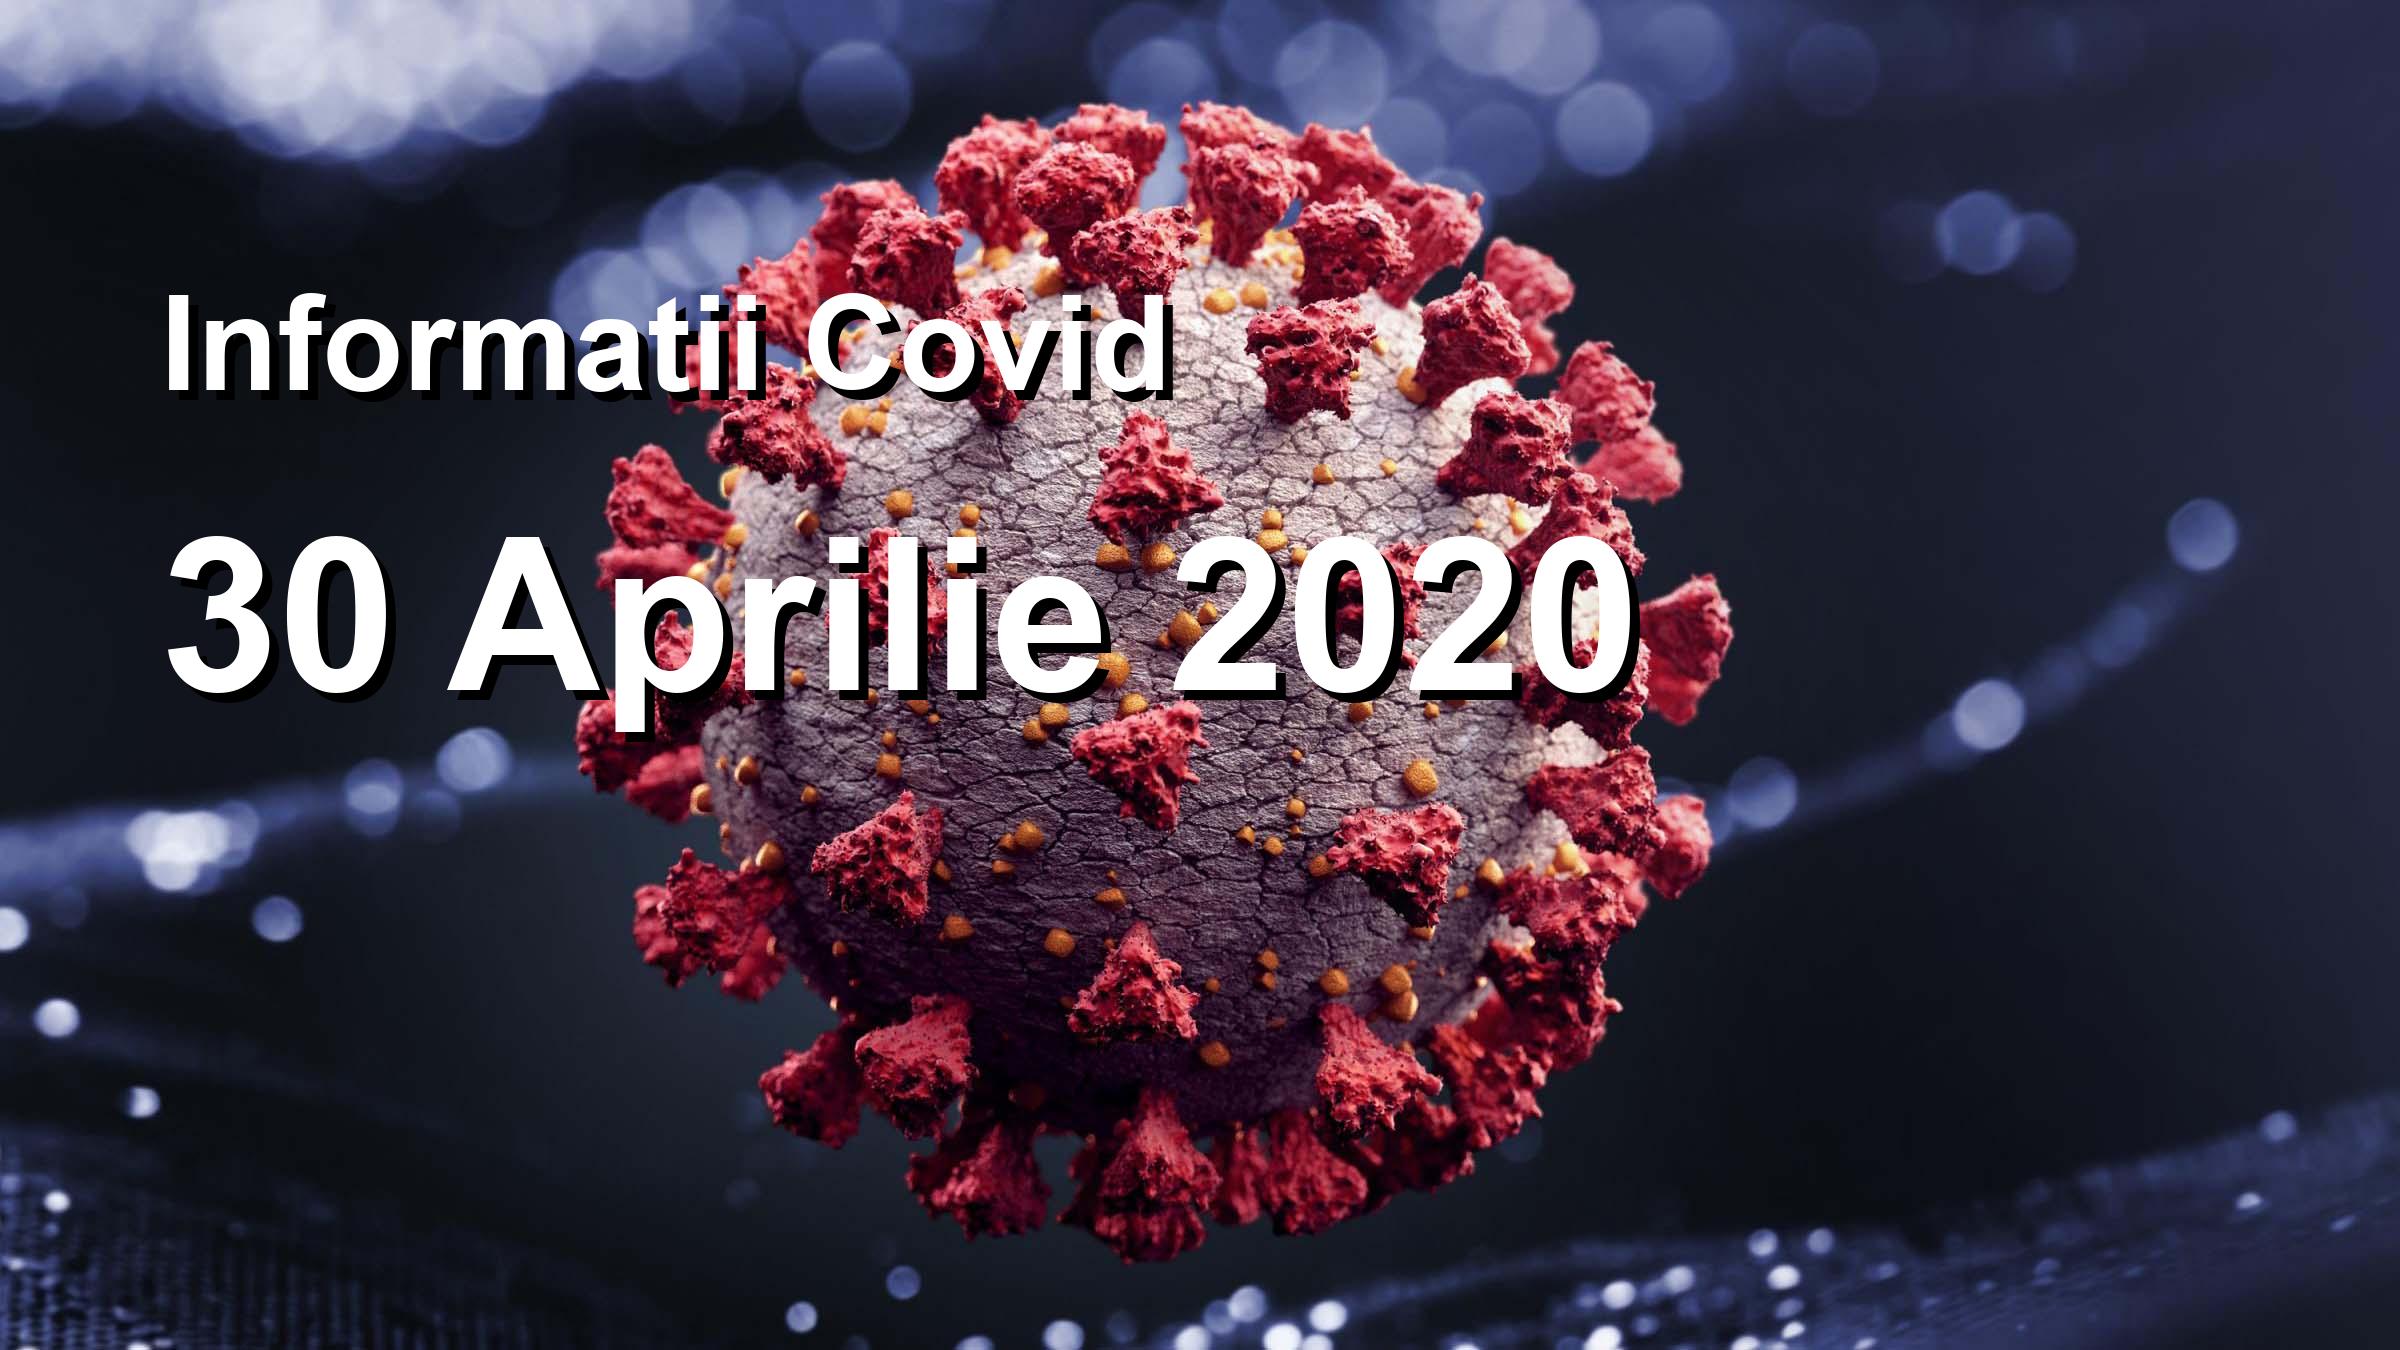 Informatii Covid-19 pentru 30 Aprilie 2020: 262 infectari, 8381 teste. | Coronavirus Romania